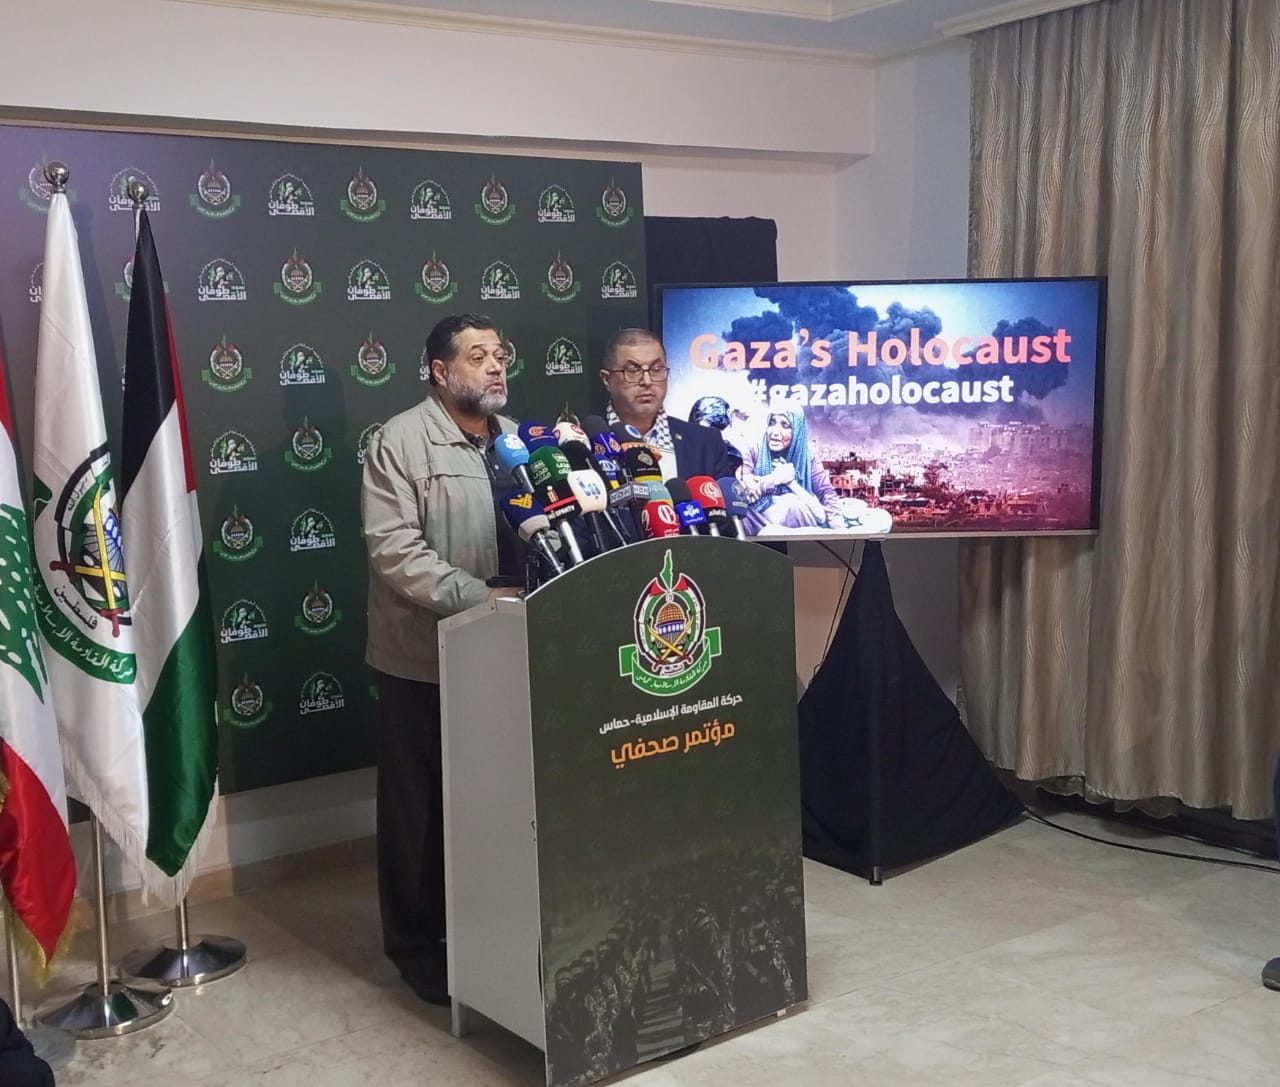 حماس : امريكا تتحمل مسؤولية المجازر في غزة نظر للضوء الأخضر الذي اعطته للاحتلال